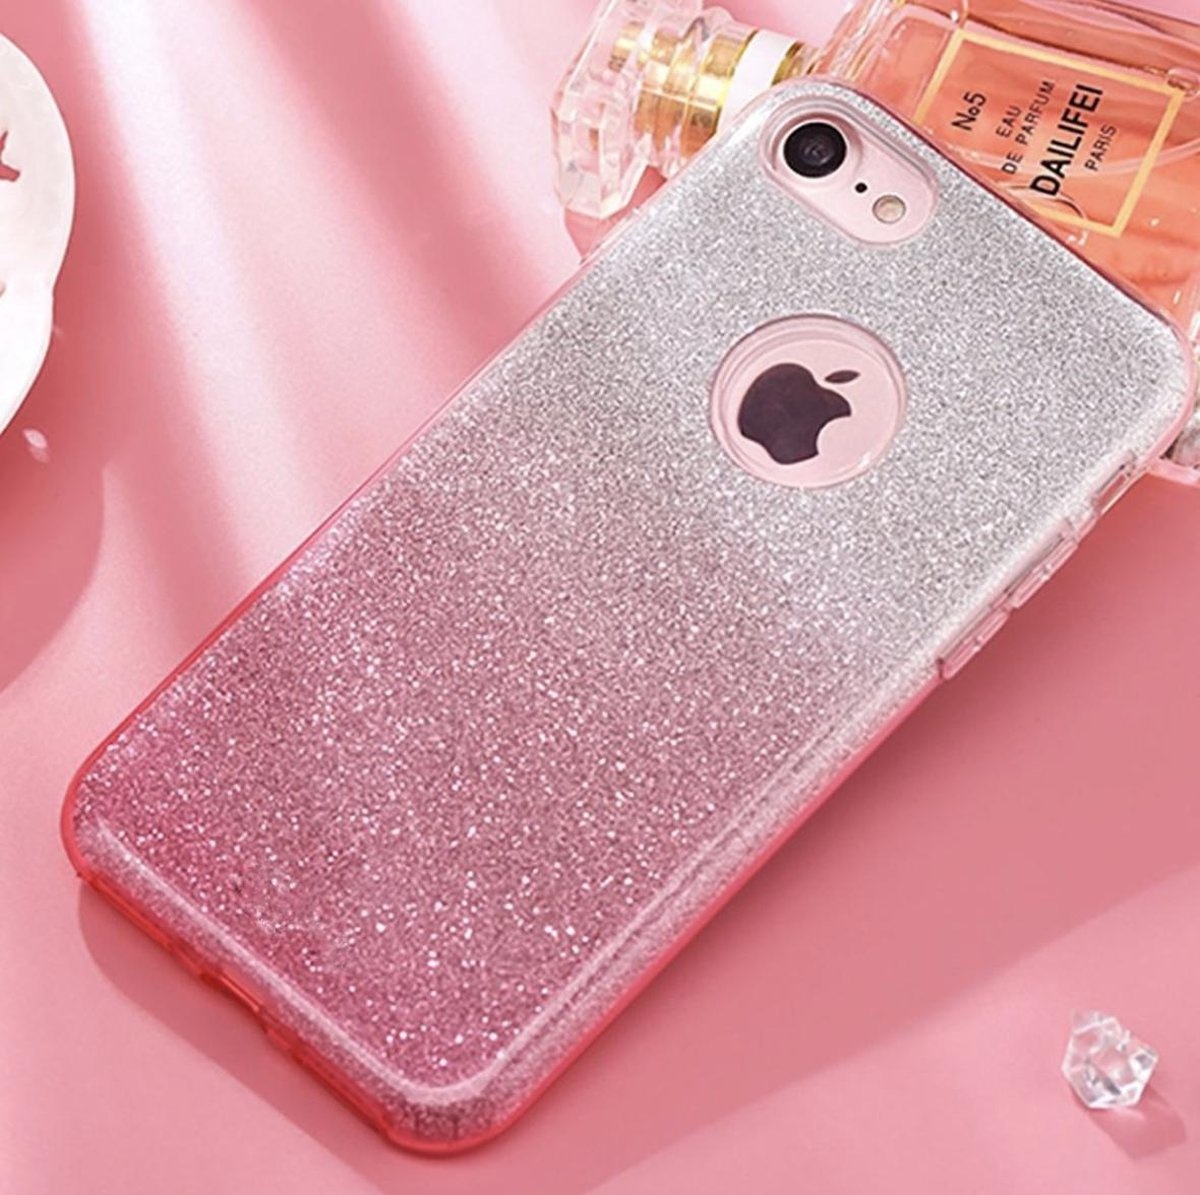 Wardianzaak Klacht effect Luxueuze Glitter Hoesje - iPhone 6 6S - Roze - Bling Bling cover - TPU case  - YPCd